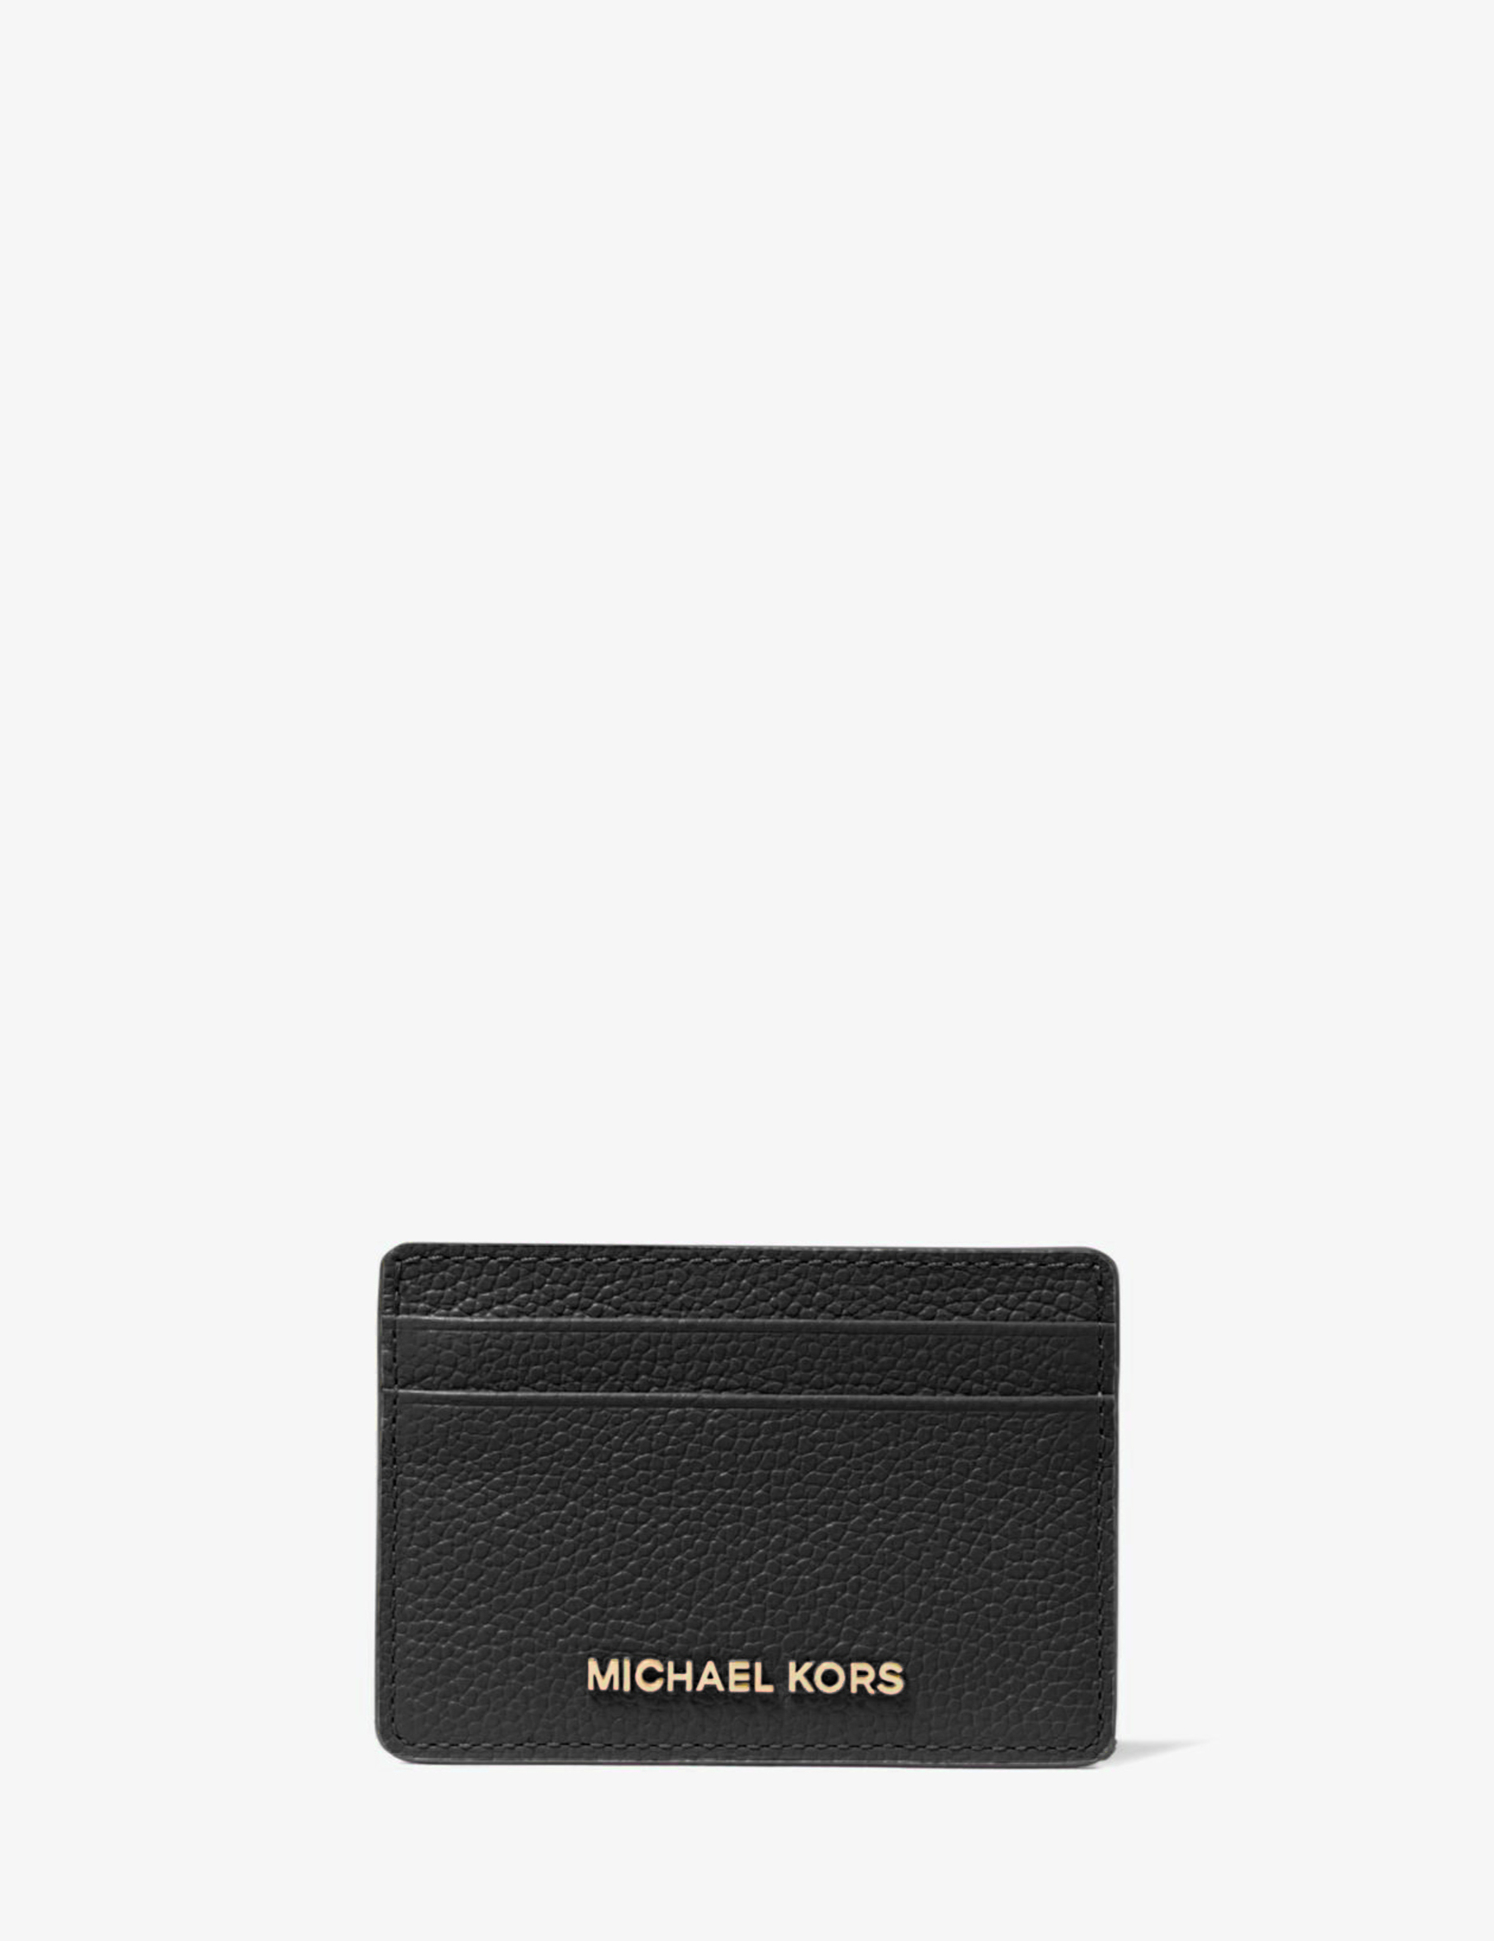 MICHAEL KORS - Pebbled Leather Card Case sort kortholder |